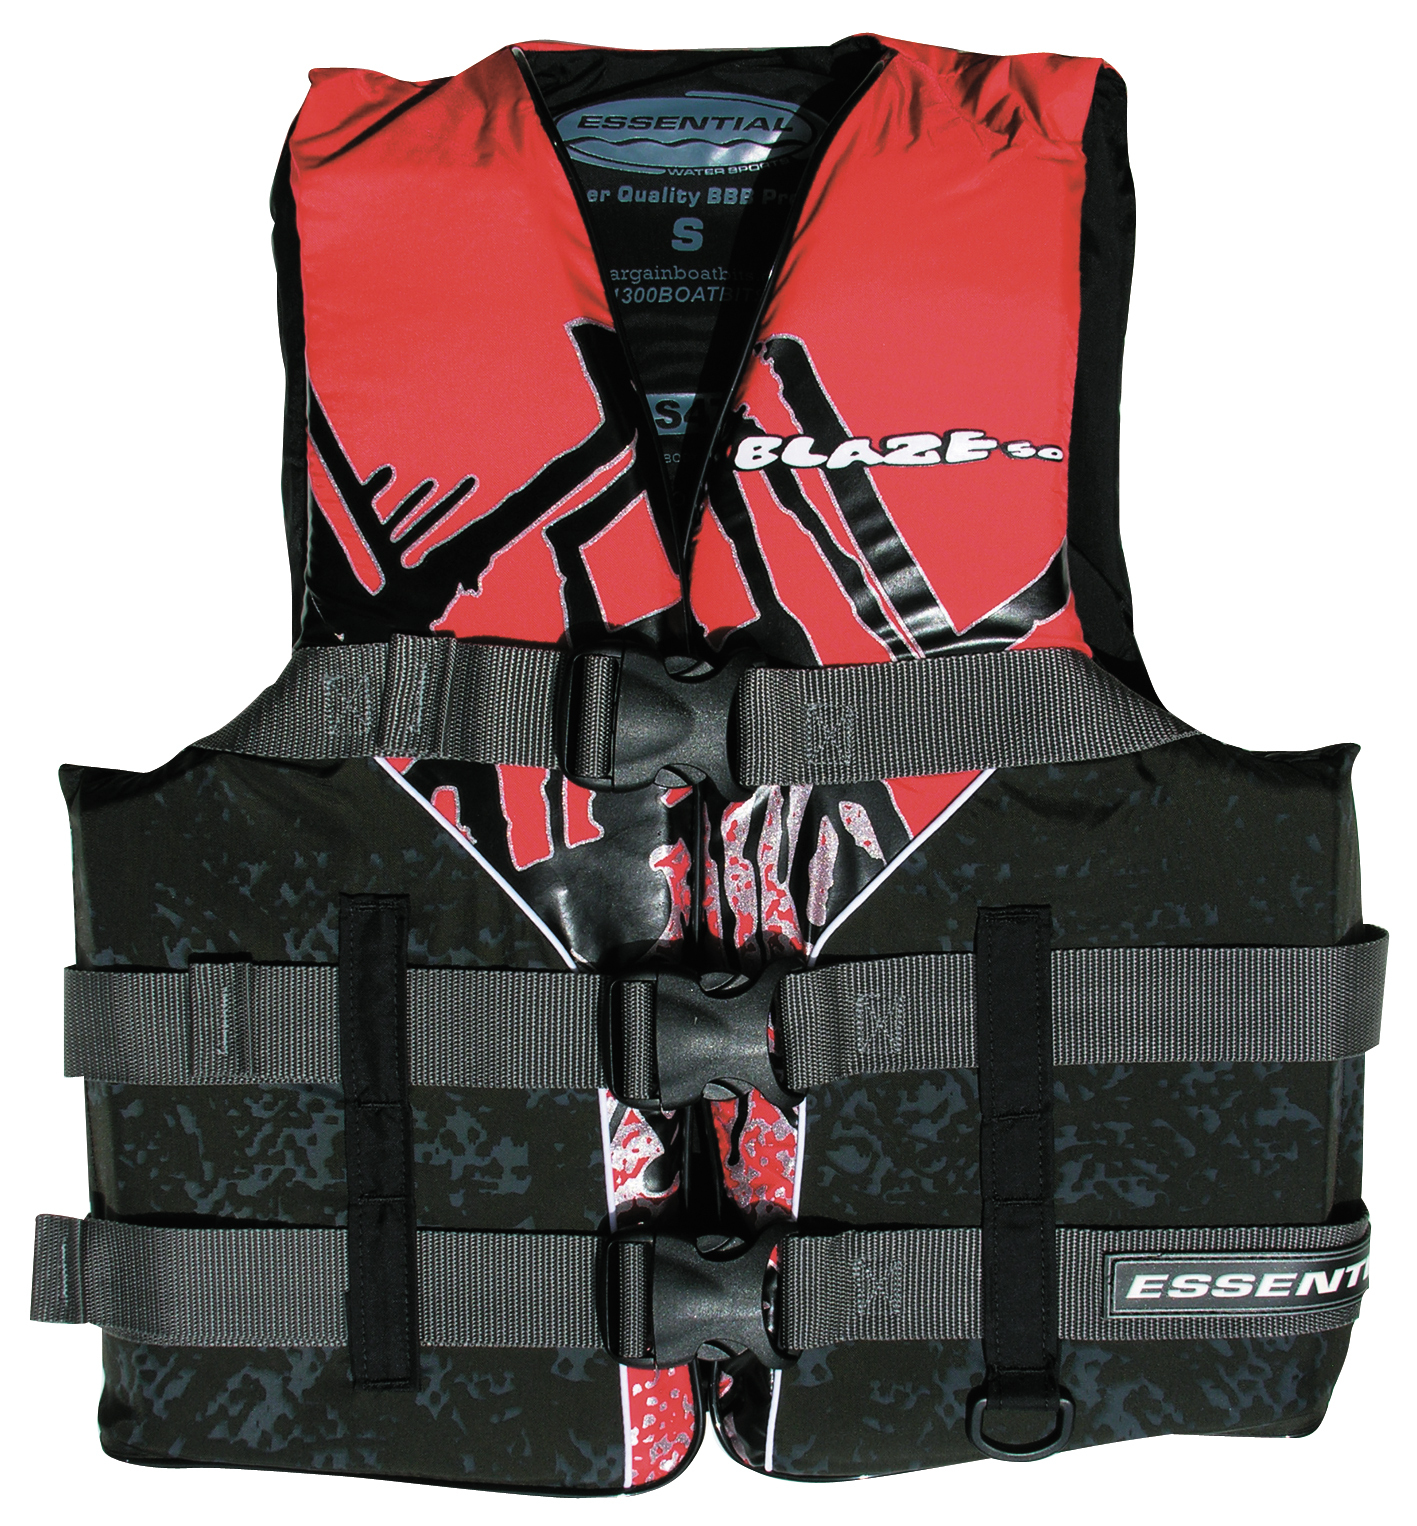 Essential Blaze L50 Adult Medium Ski Vest Red Essential